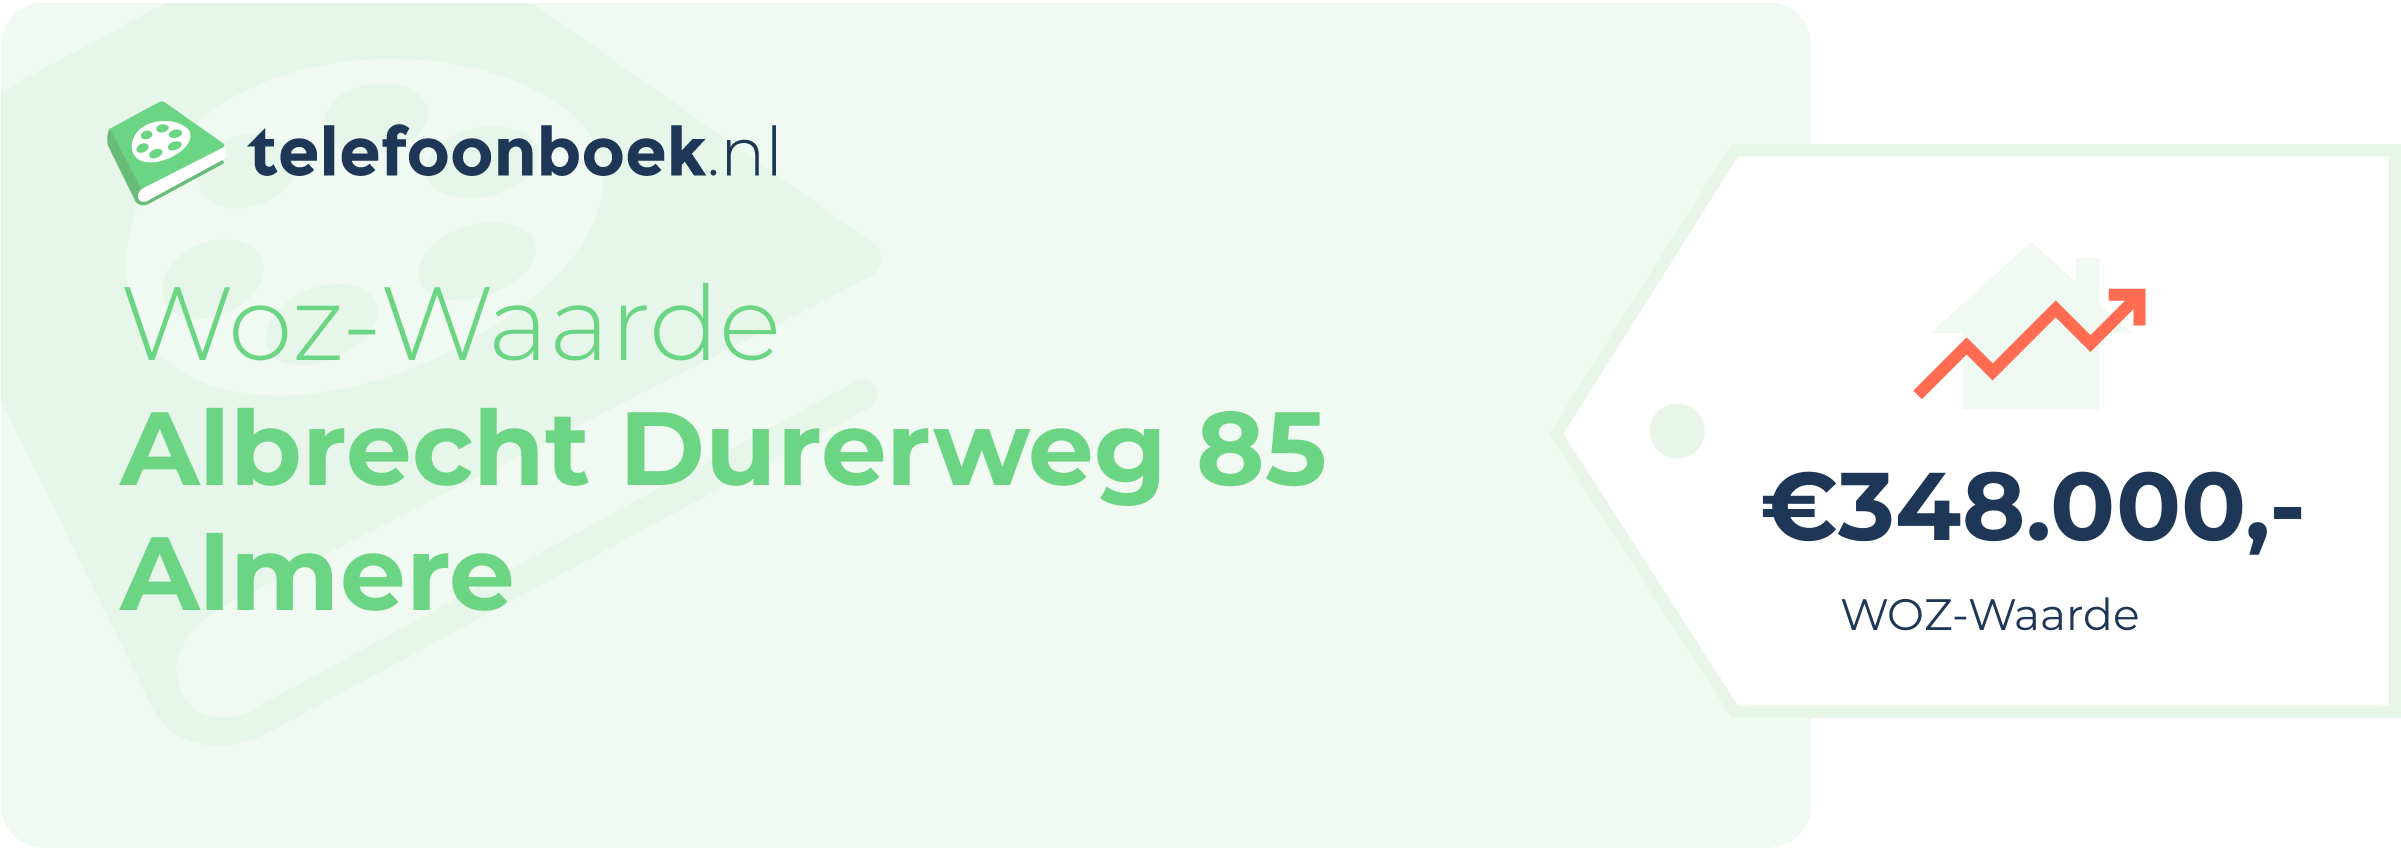 WOZ-waarde Albrecht Durerweg 85 Almere